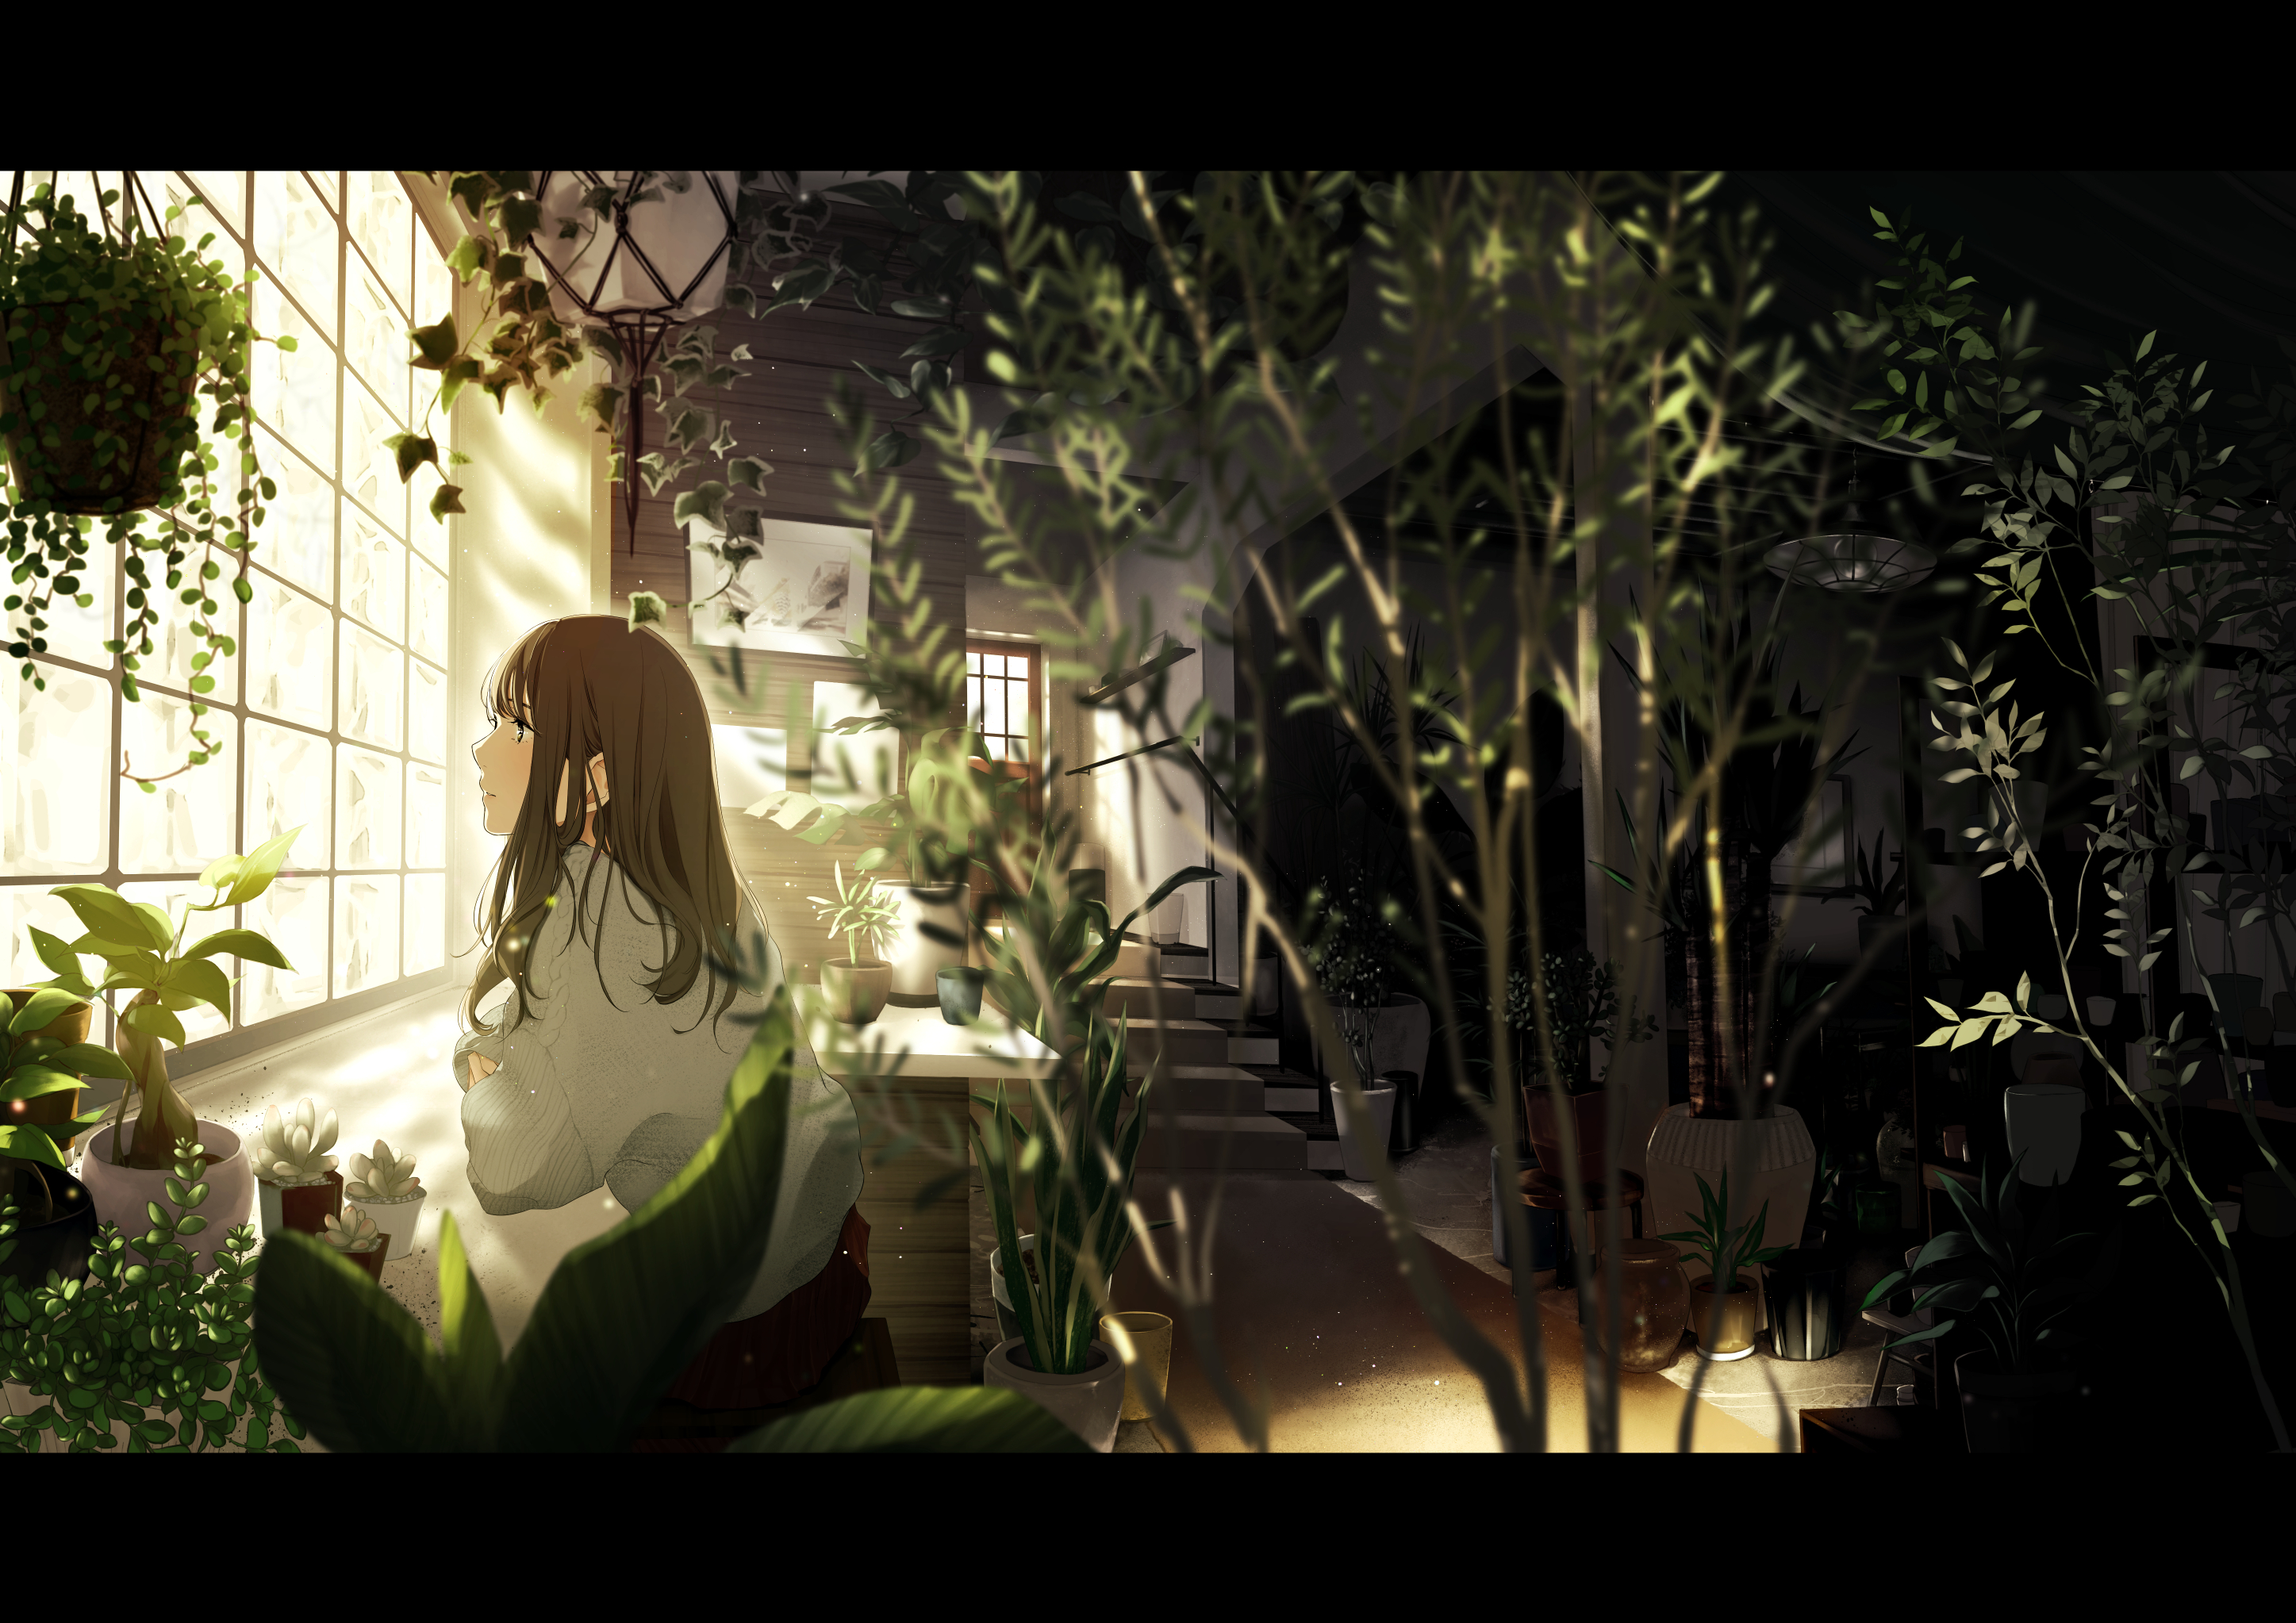 Anime Anime Girls Brunette Long Hair Dark Eyes Leaves Plants Window Room 2894x2046